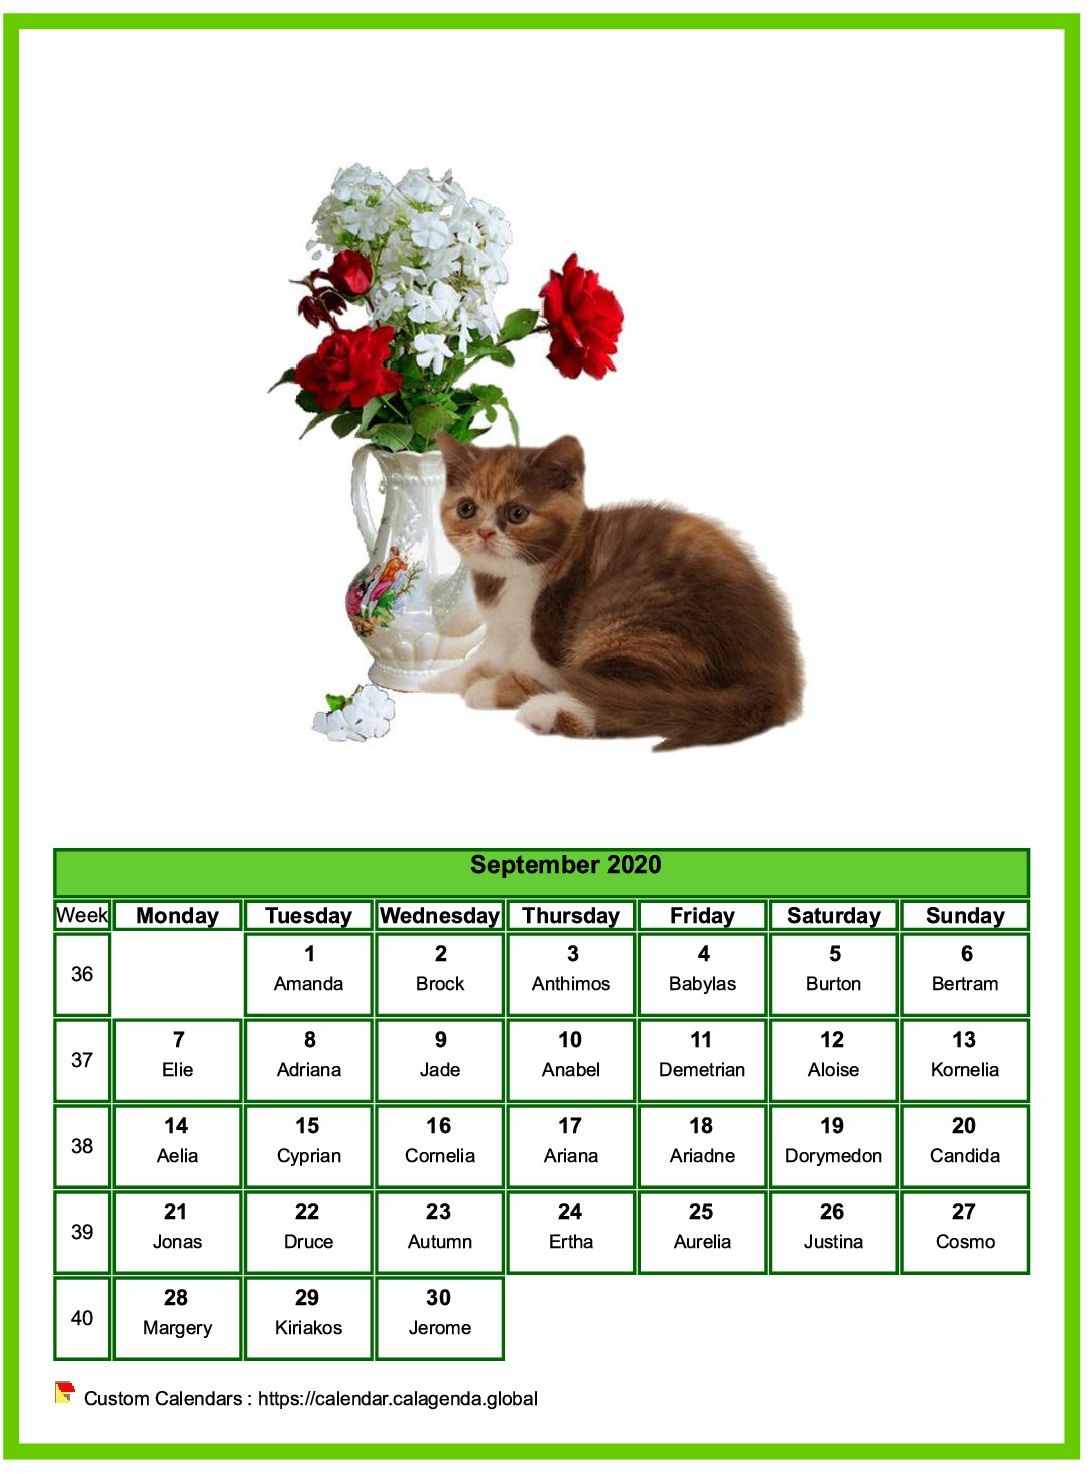 Calendar September 2020 cats